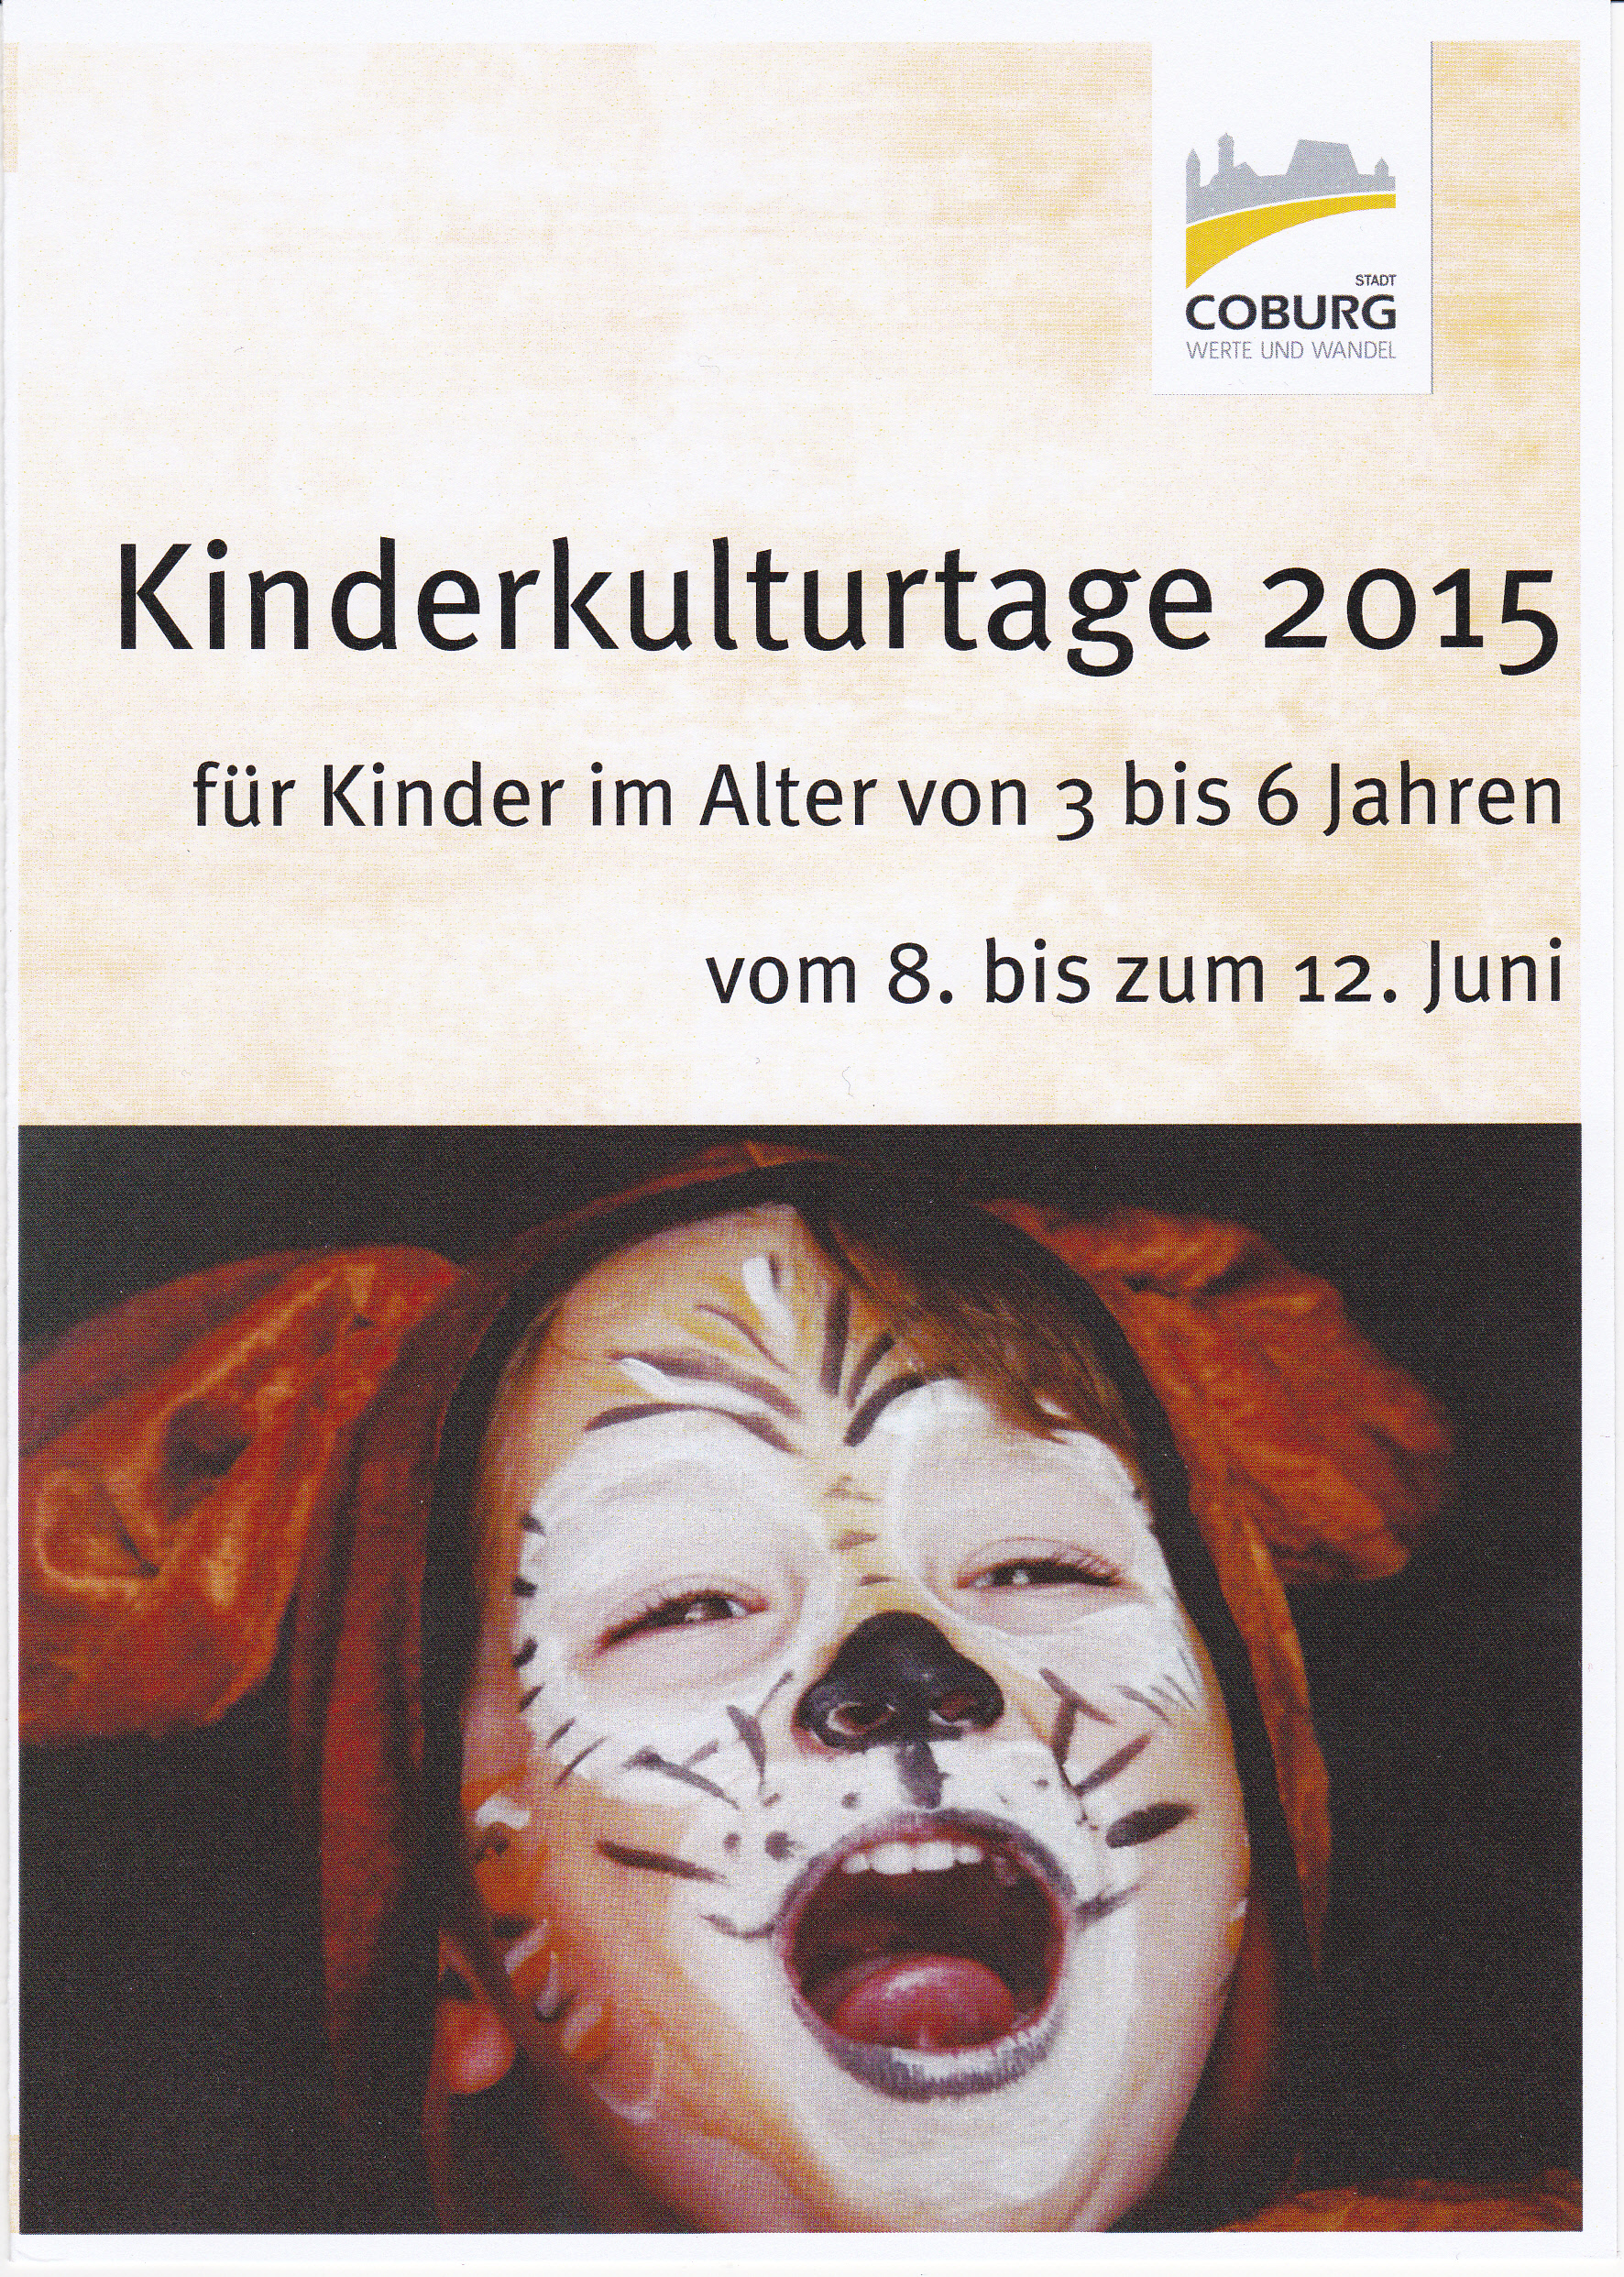 Kinderkulturtage 2015